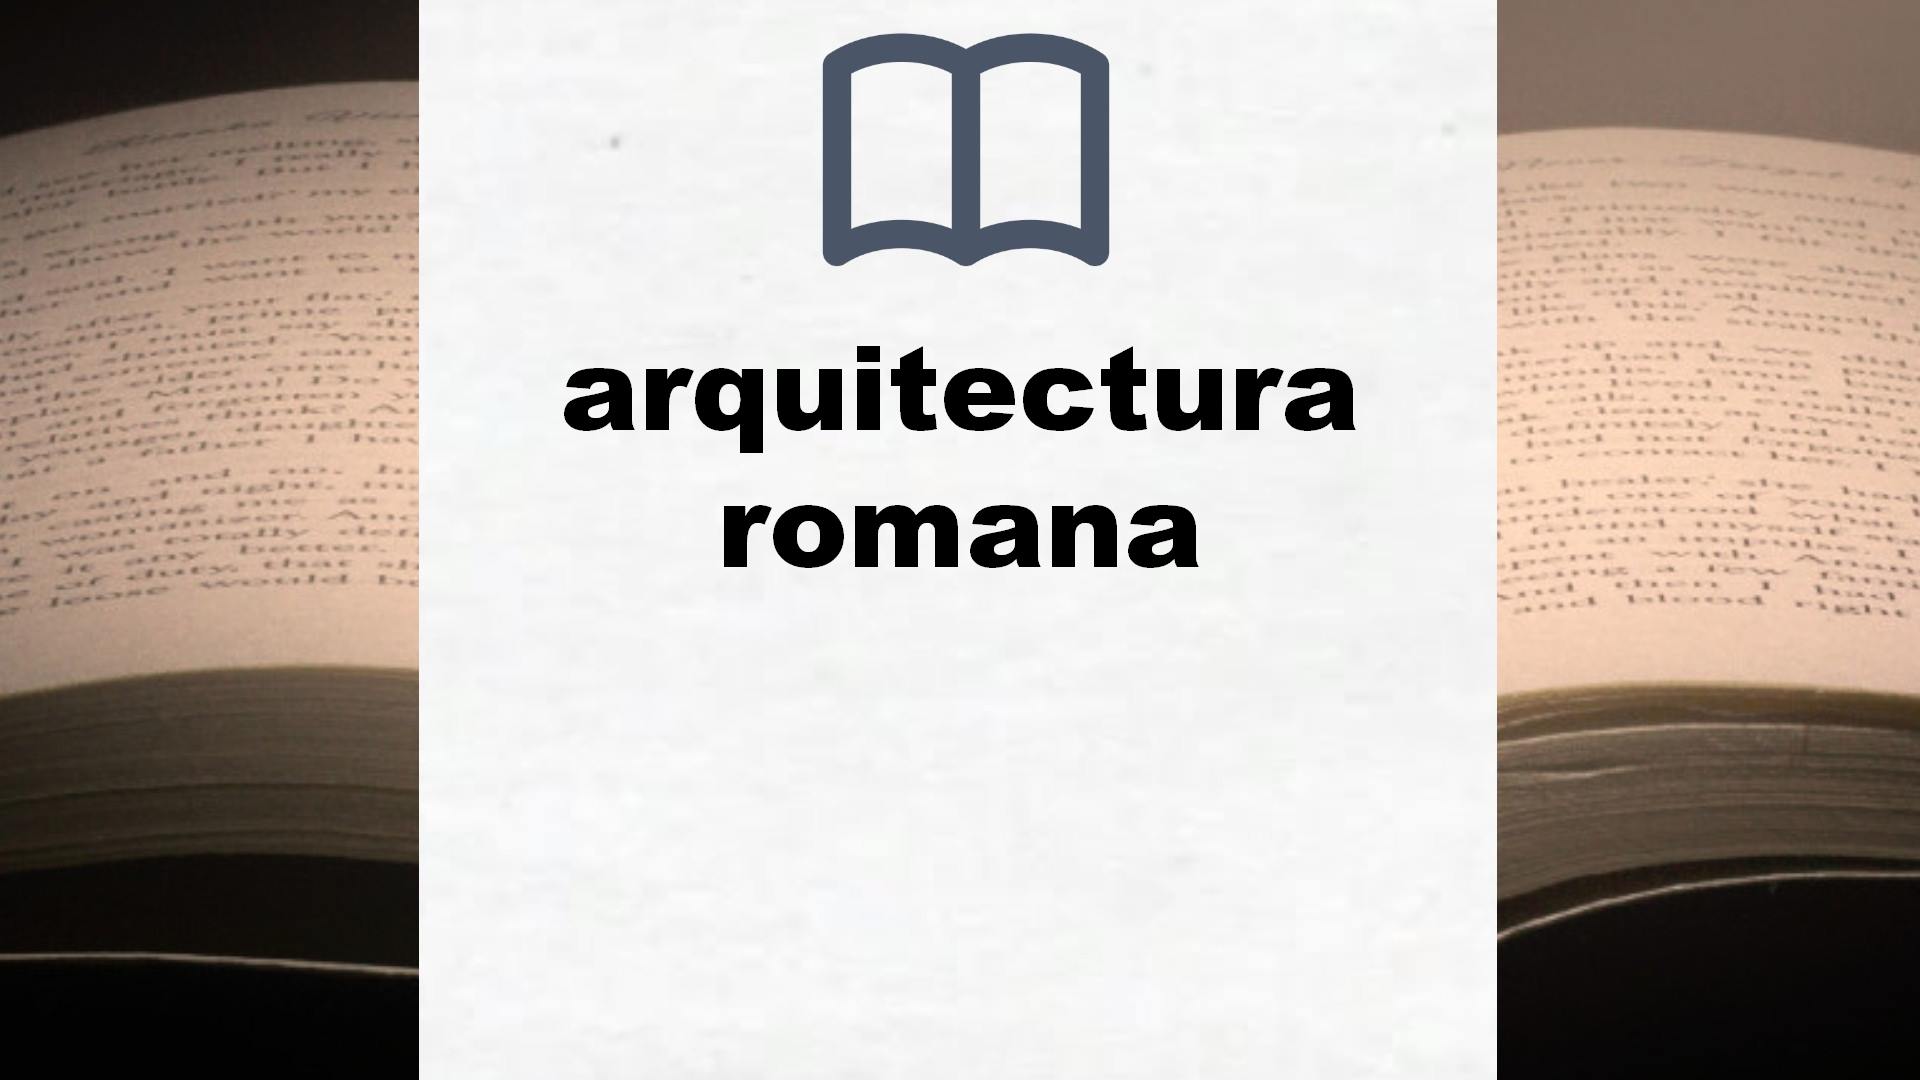 Libros sobre arquitectura romana